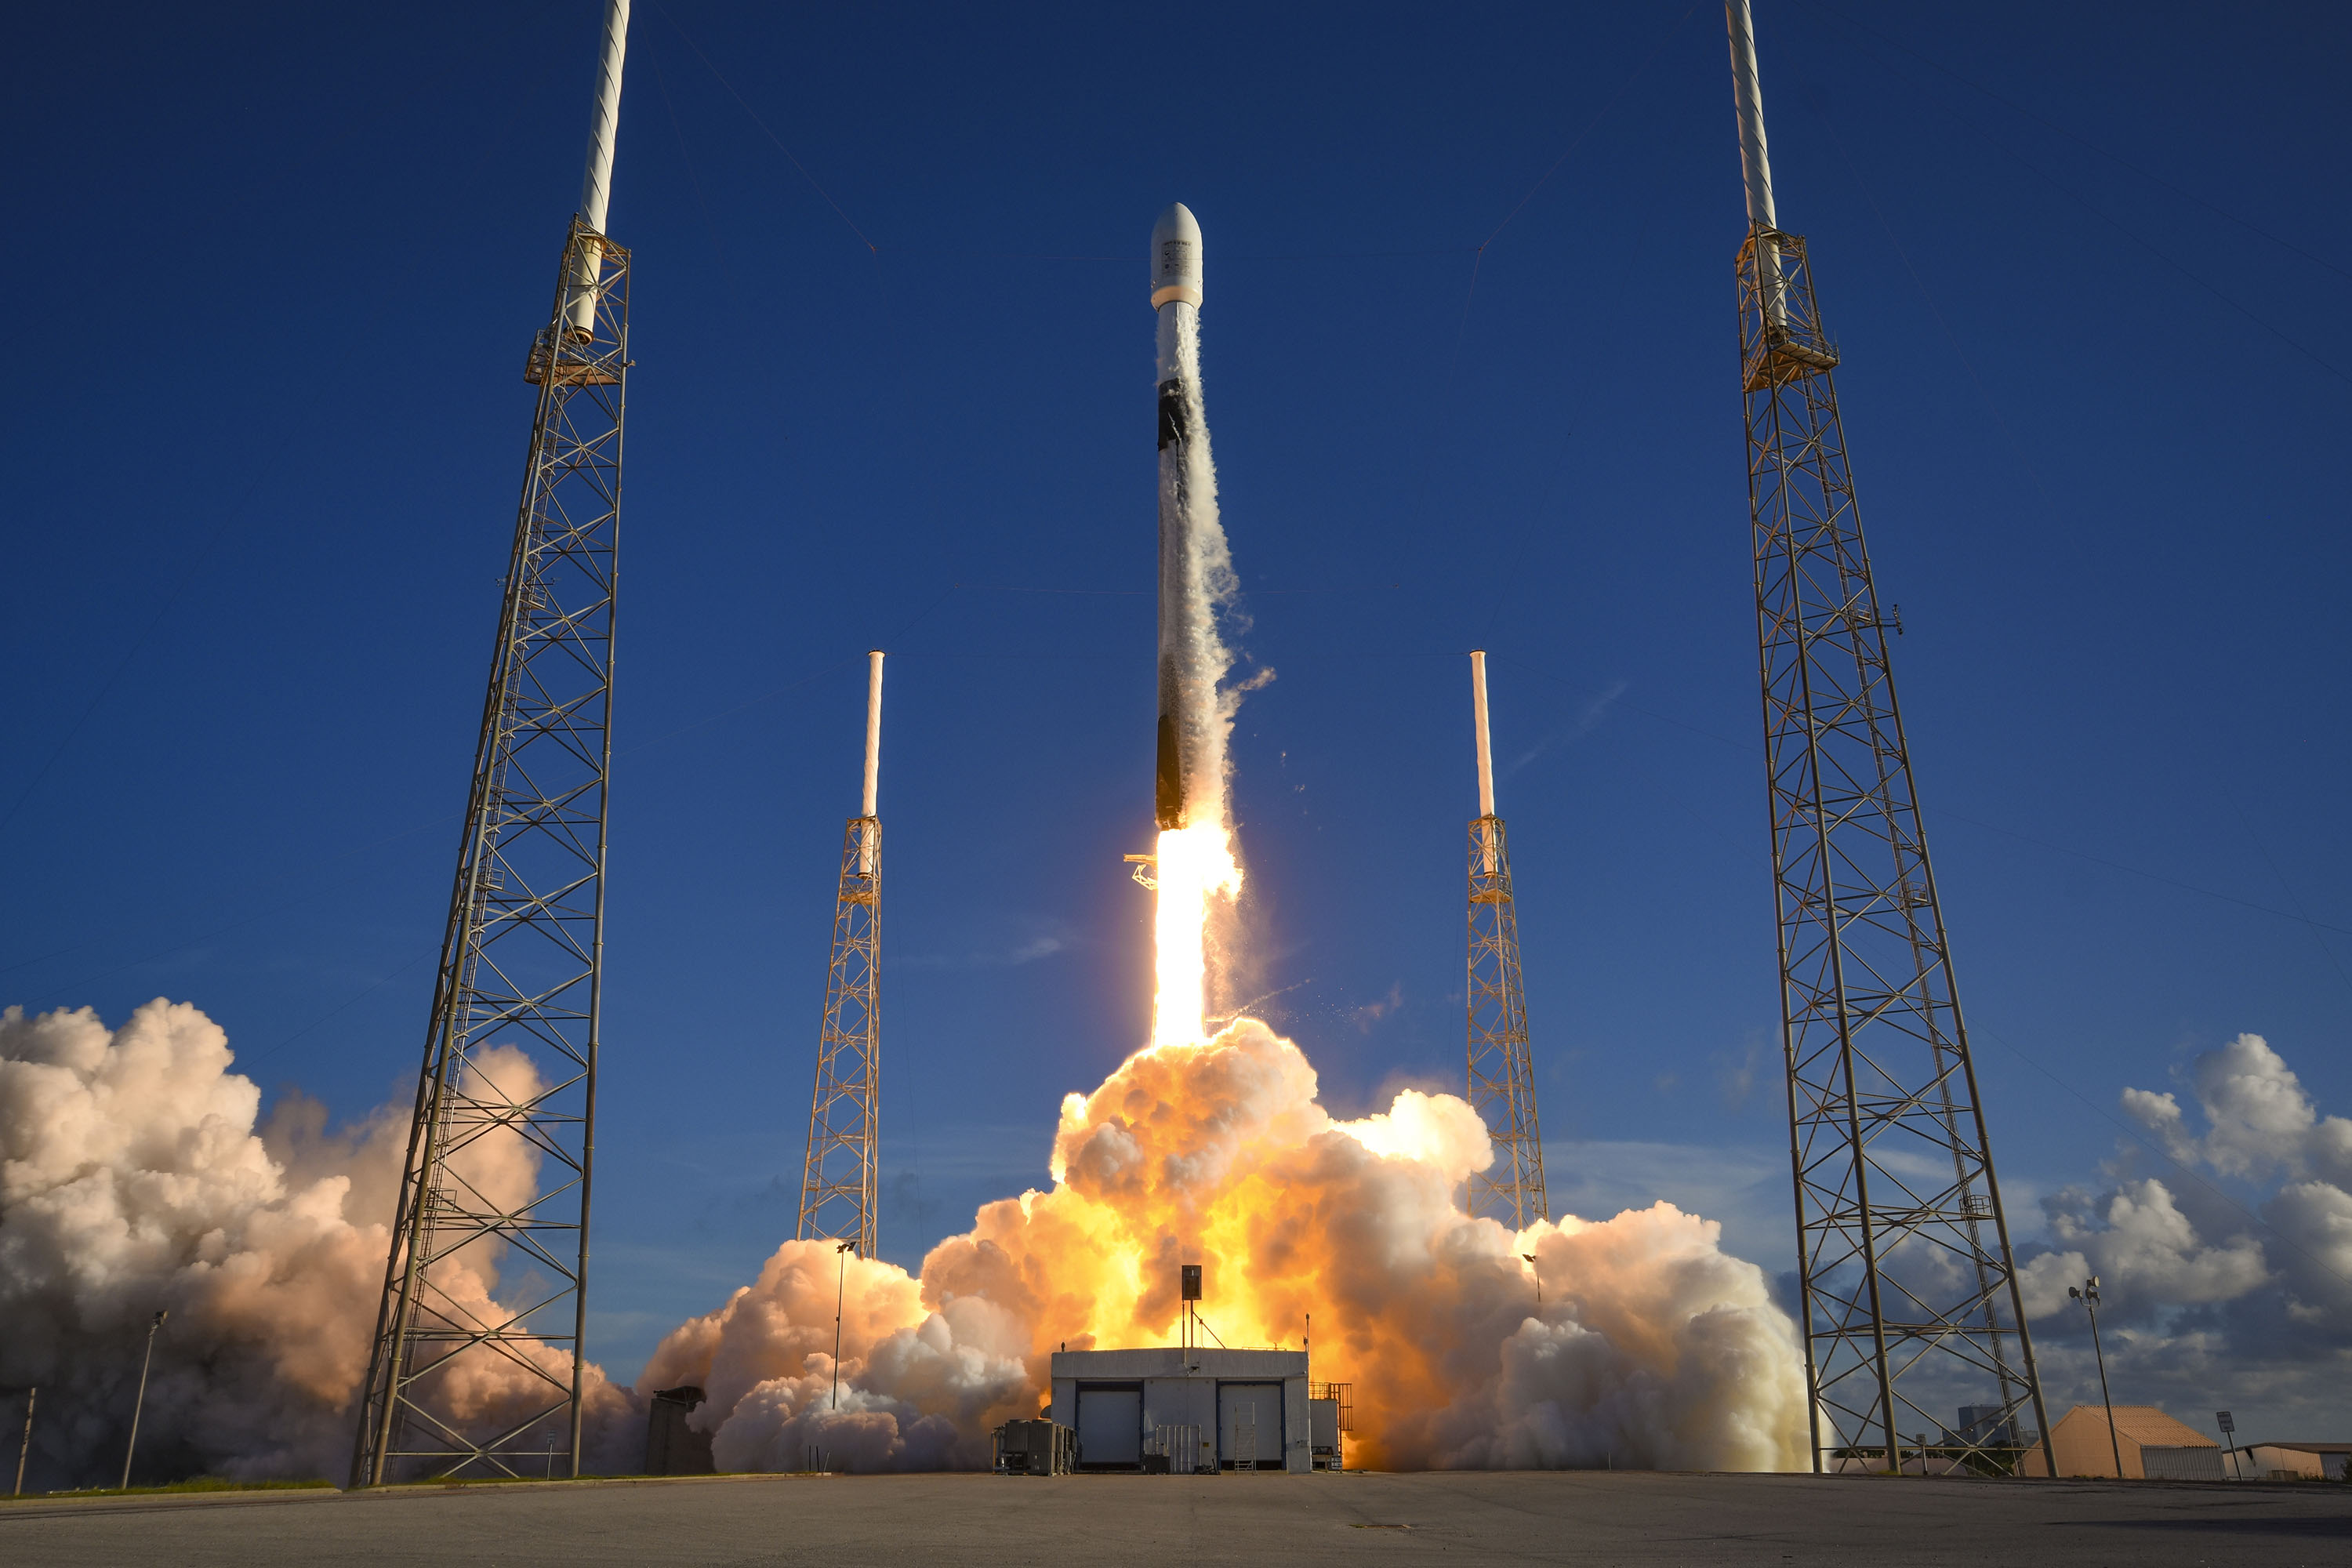 spacex falcon 9 roketi güney kore'nin danuri ay yörünge aracını fırlattı